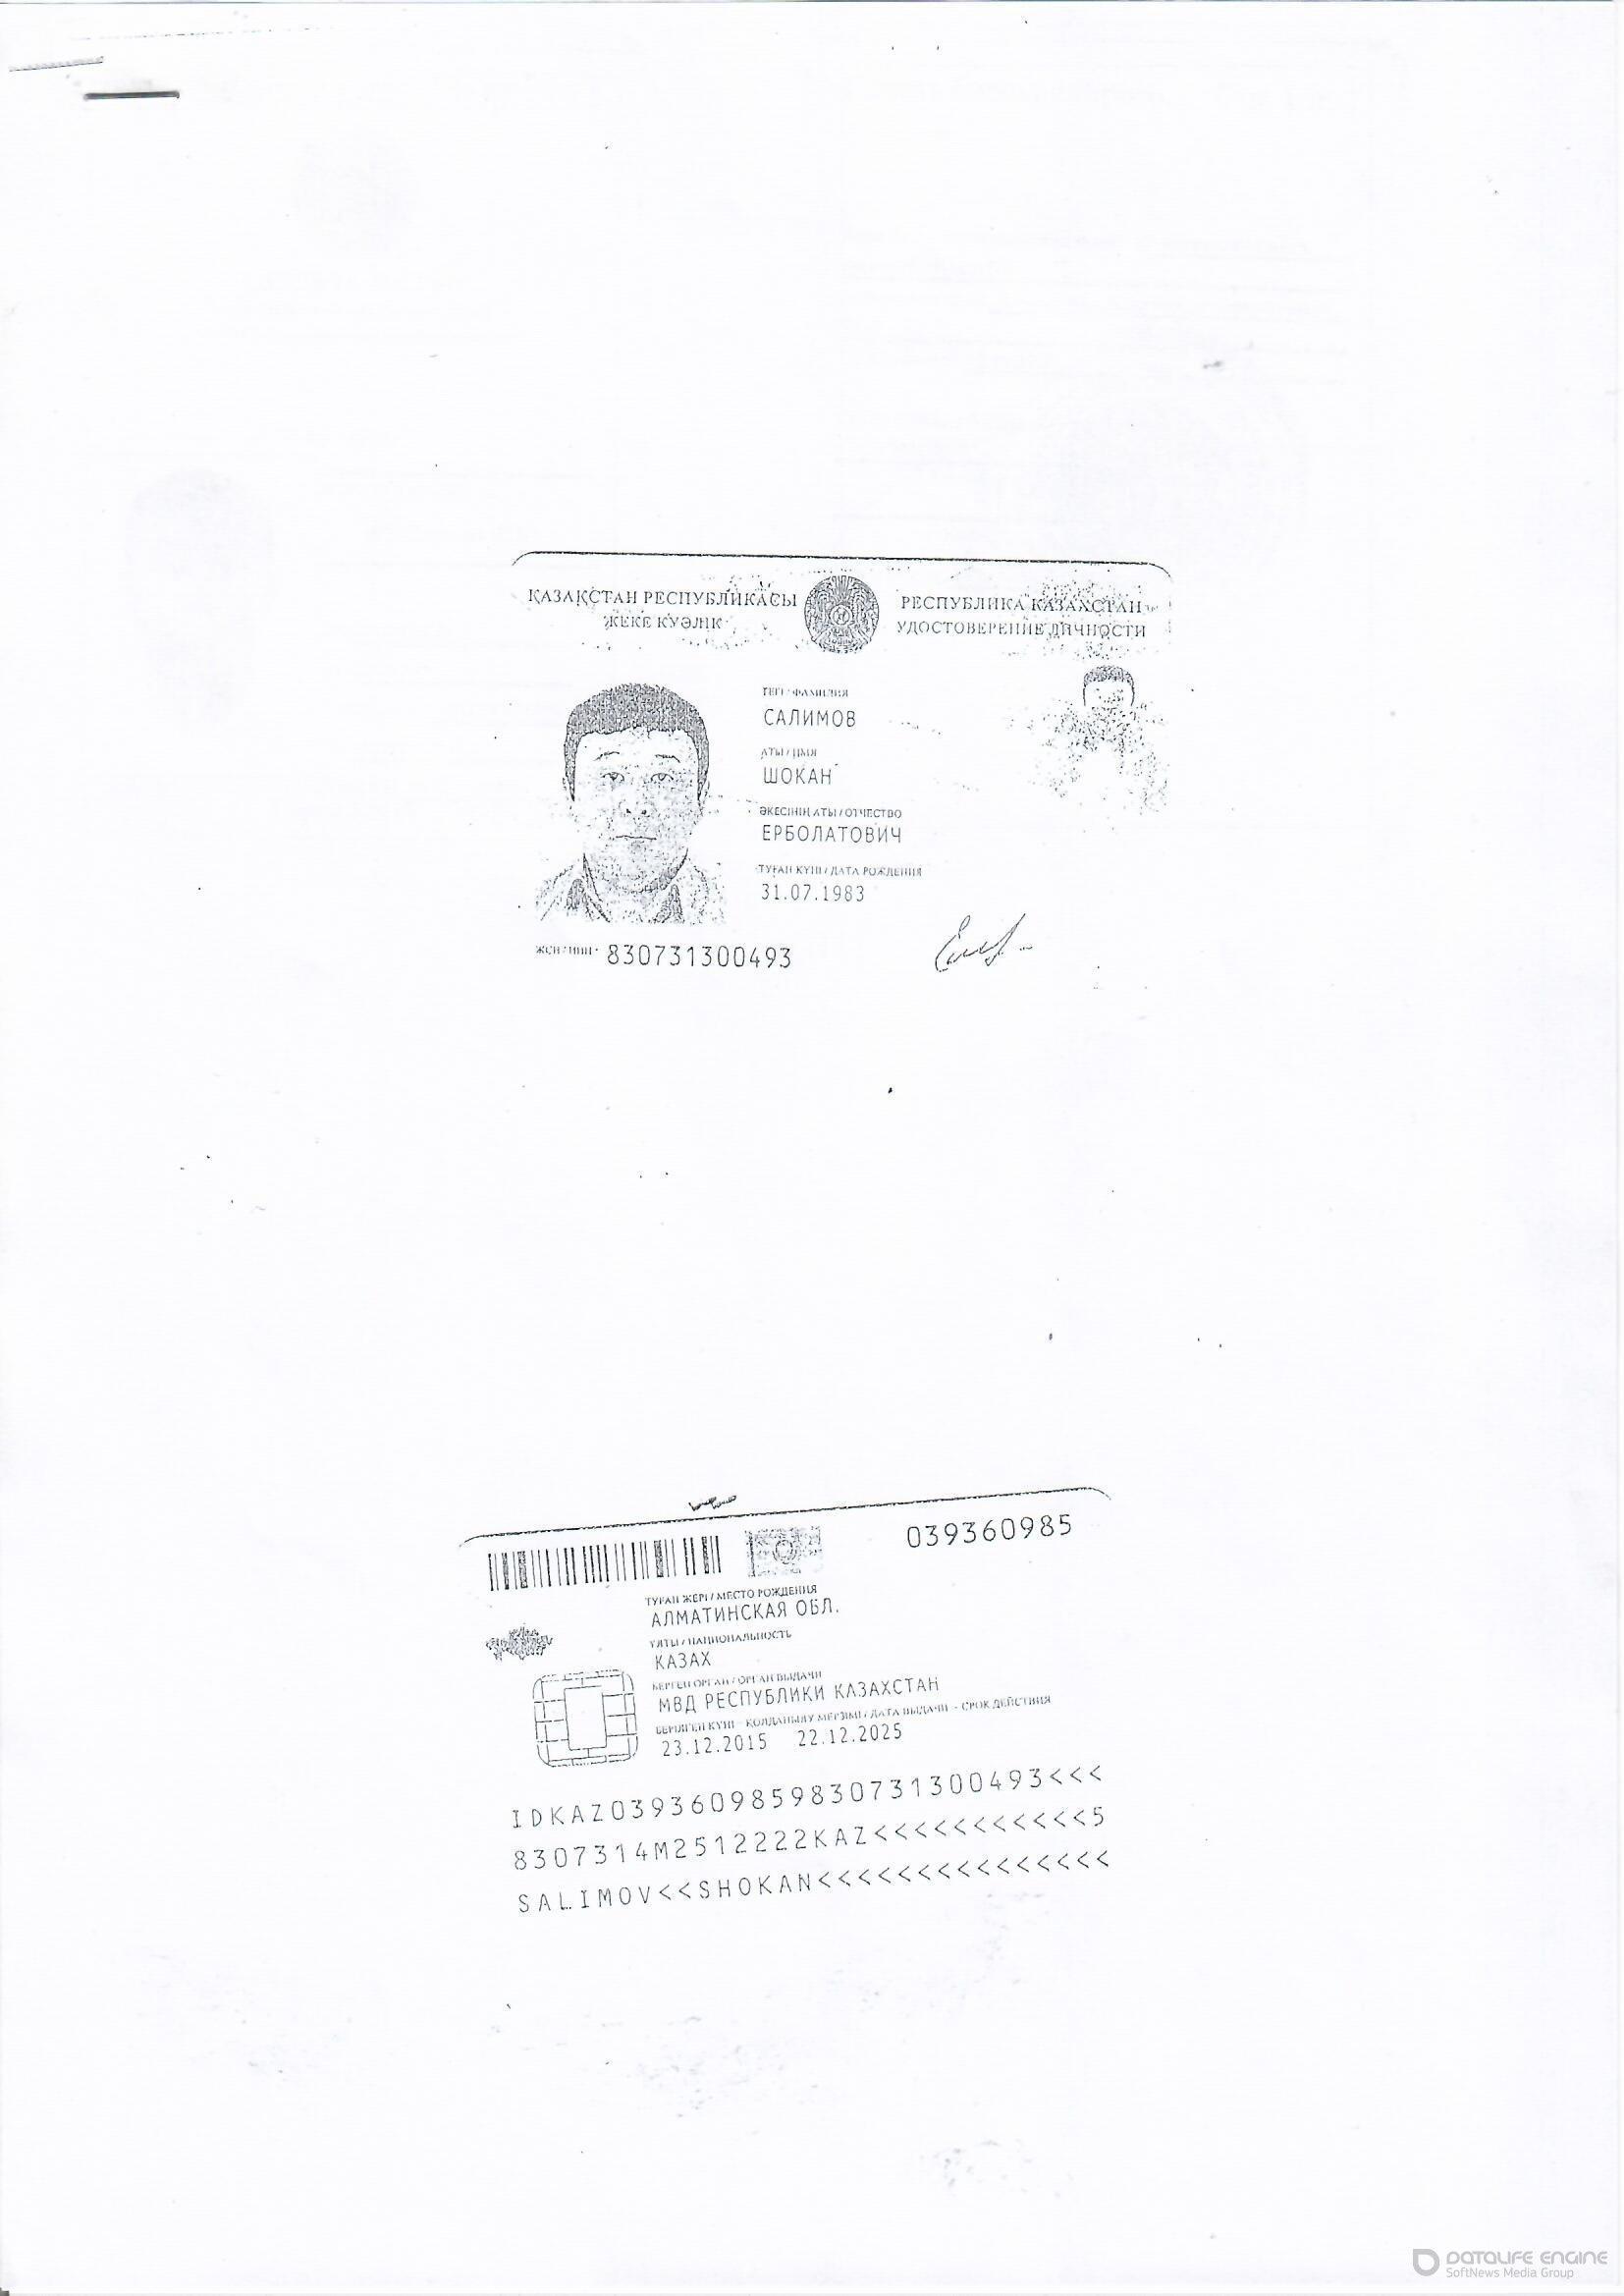 Удостоверение ИП "Салимова Ш.Е."